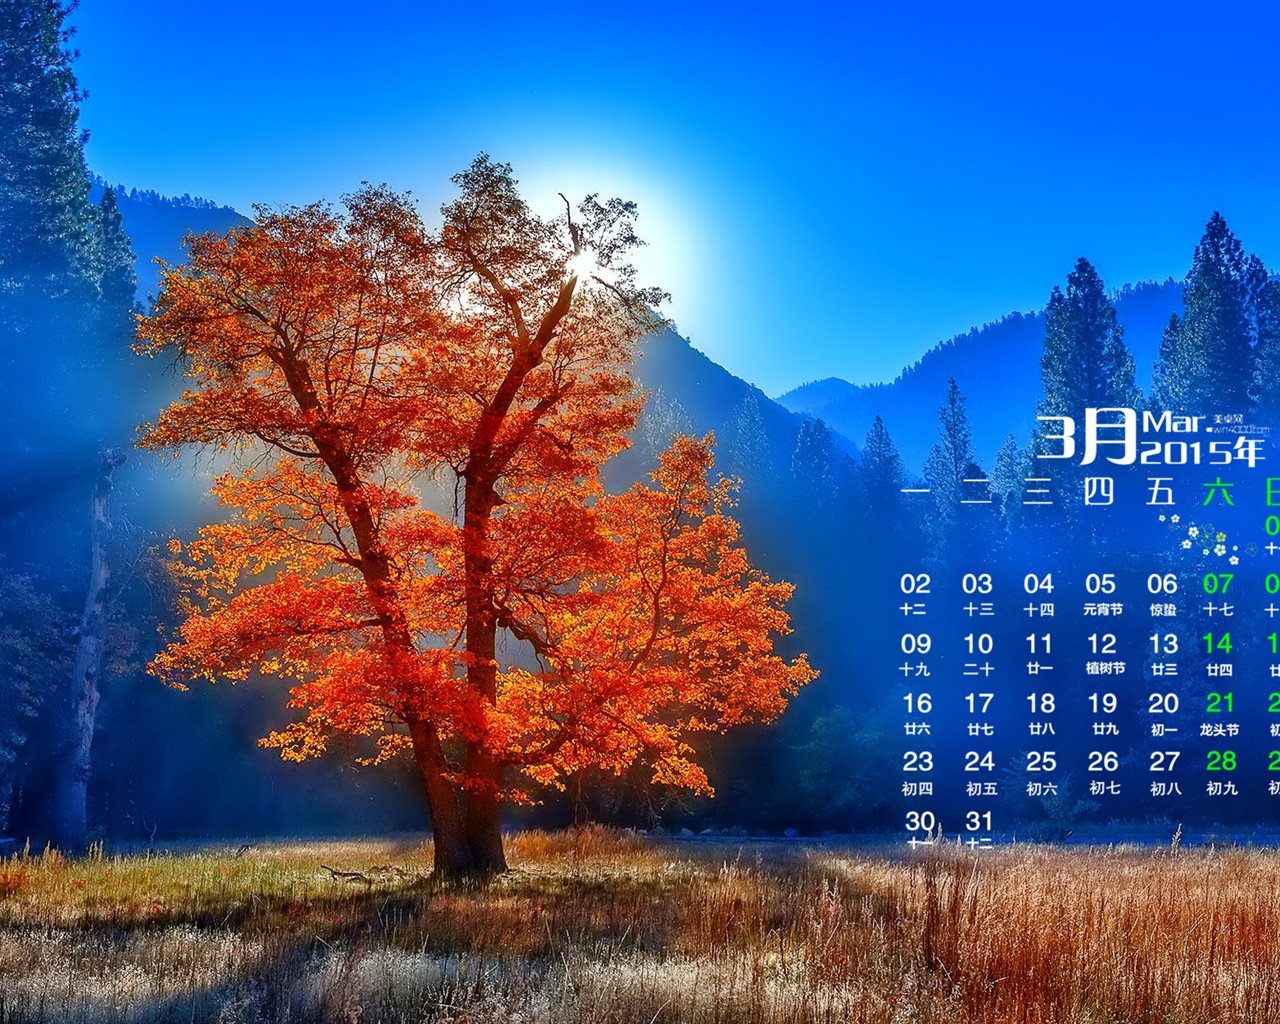 03. 2015 Kalendář tapety (1) #16 - 1280x1024